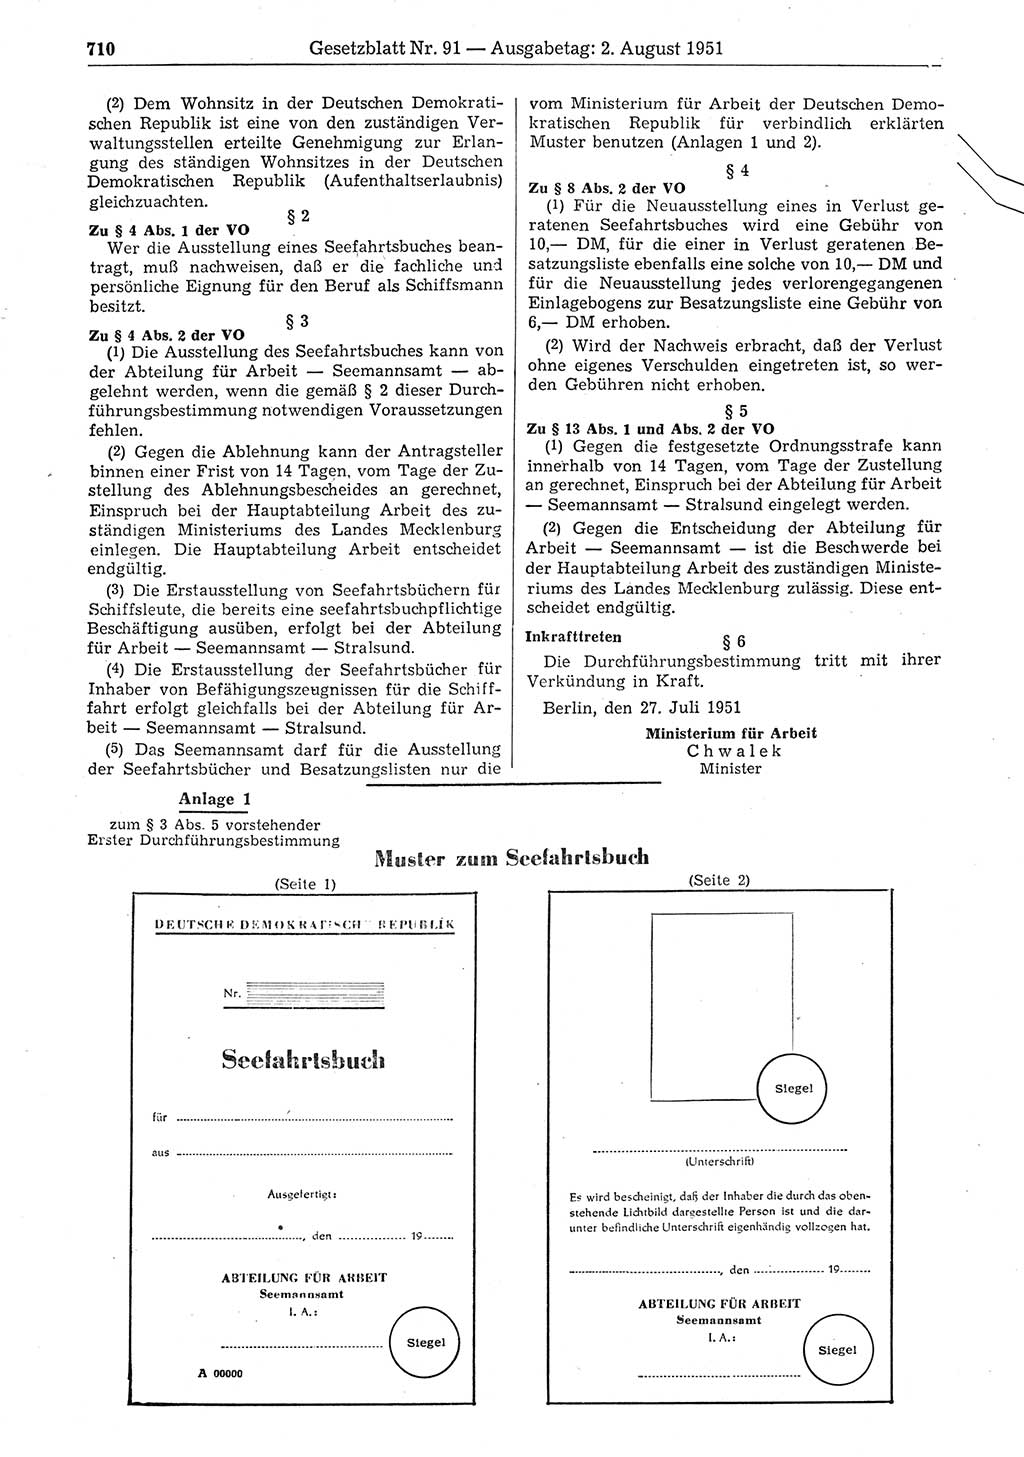 Gesetzblatt (GBl.) der Deutschen Demokratischen Republik (DDR) 1951, Seite 710 (GBl. DDR 1951, S. 710)